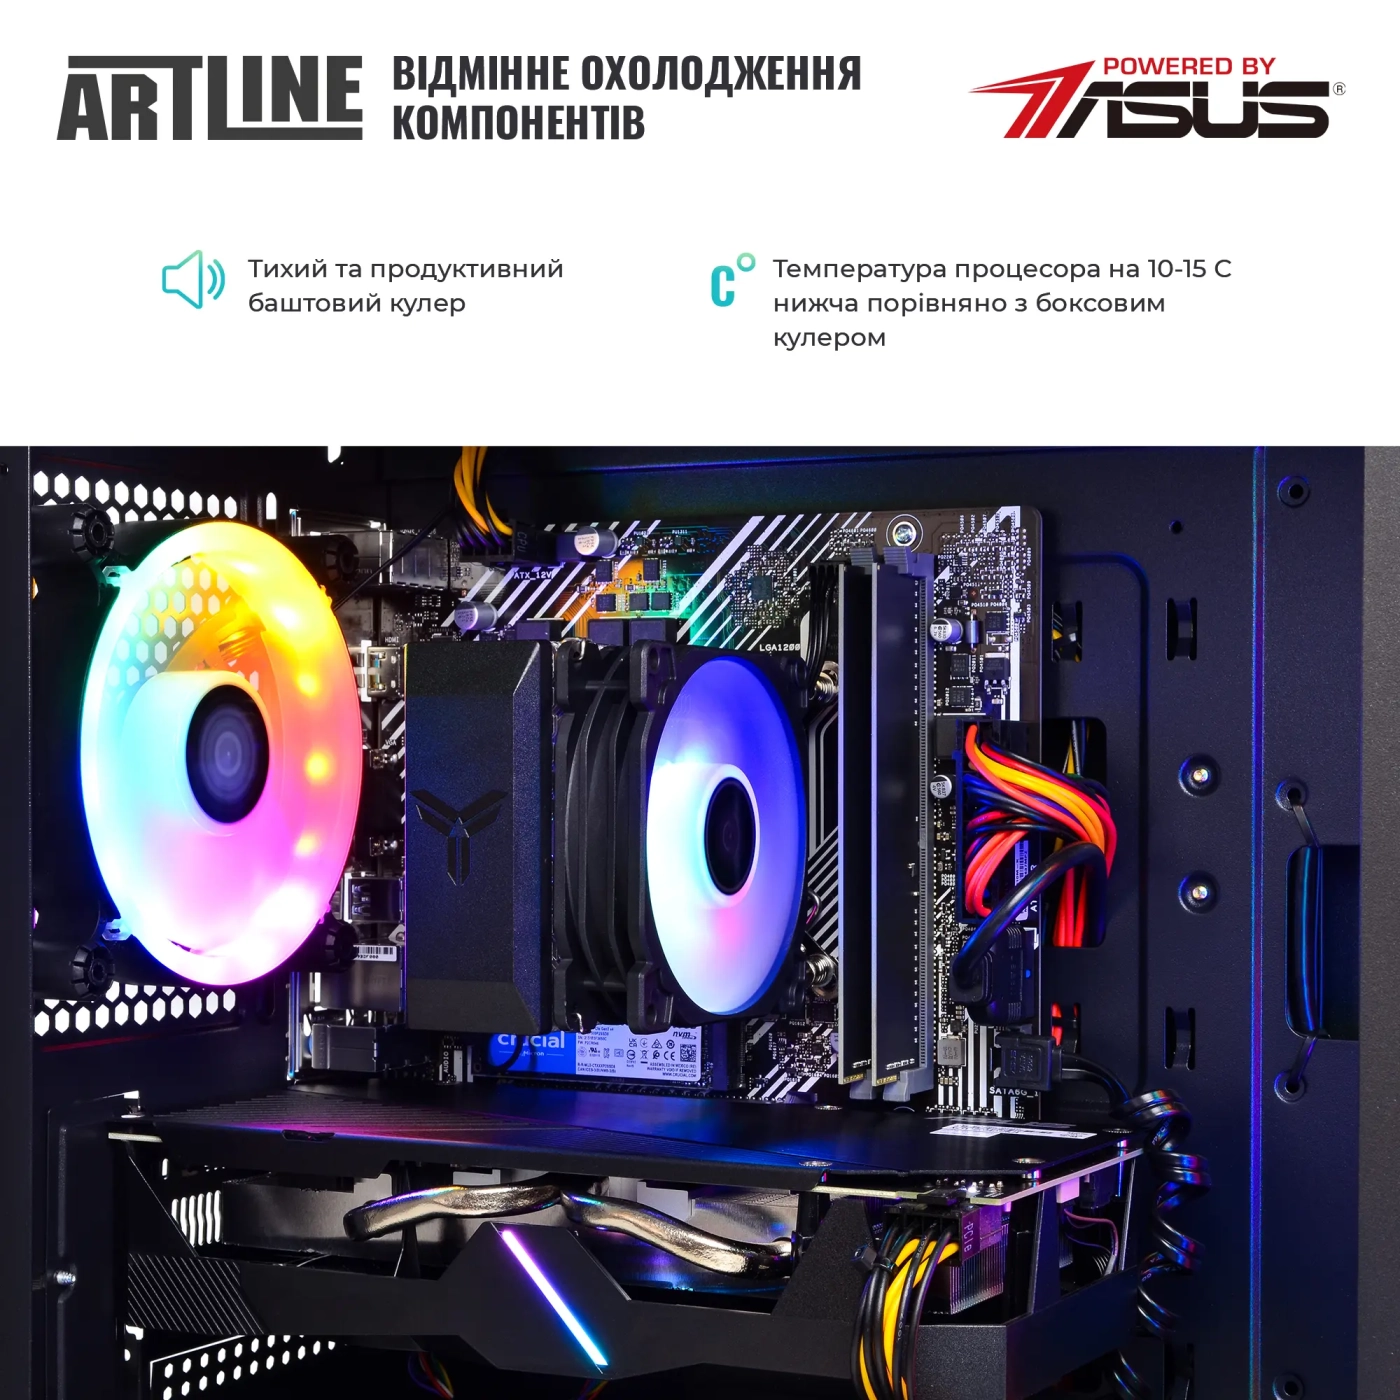 Купить Компьютер ARTLINE Gaming X39v44 - фото 7